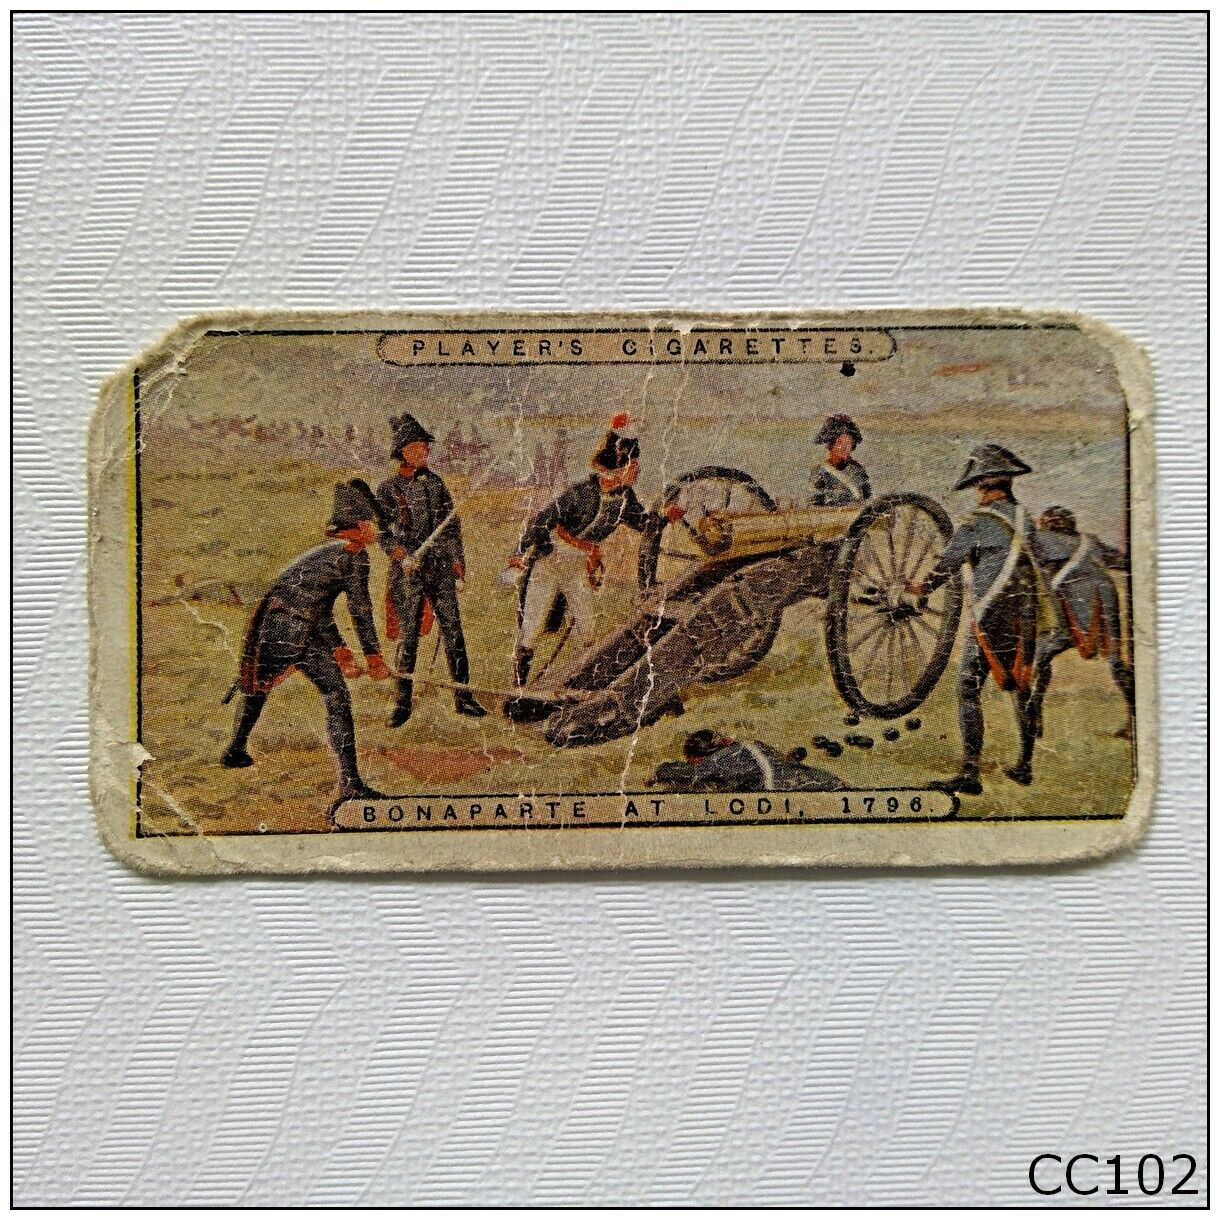 Player Napoleon #5 Bonaparte at Lodi 1796 Cigarette Card (CC102)